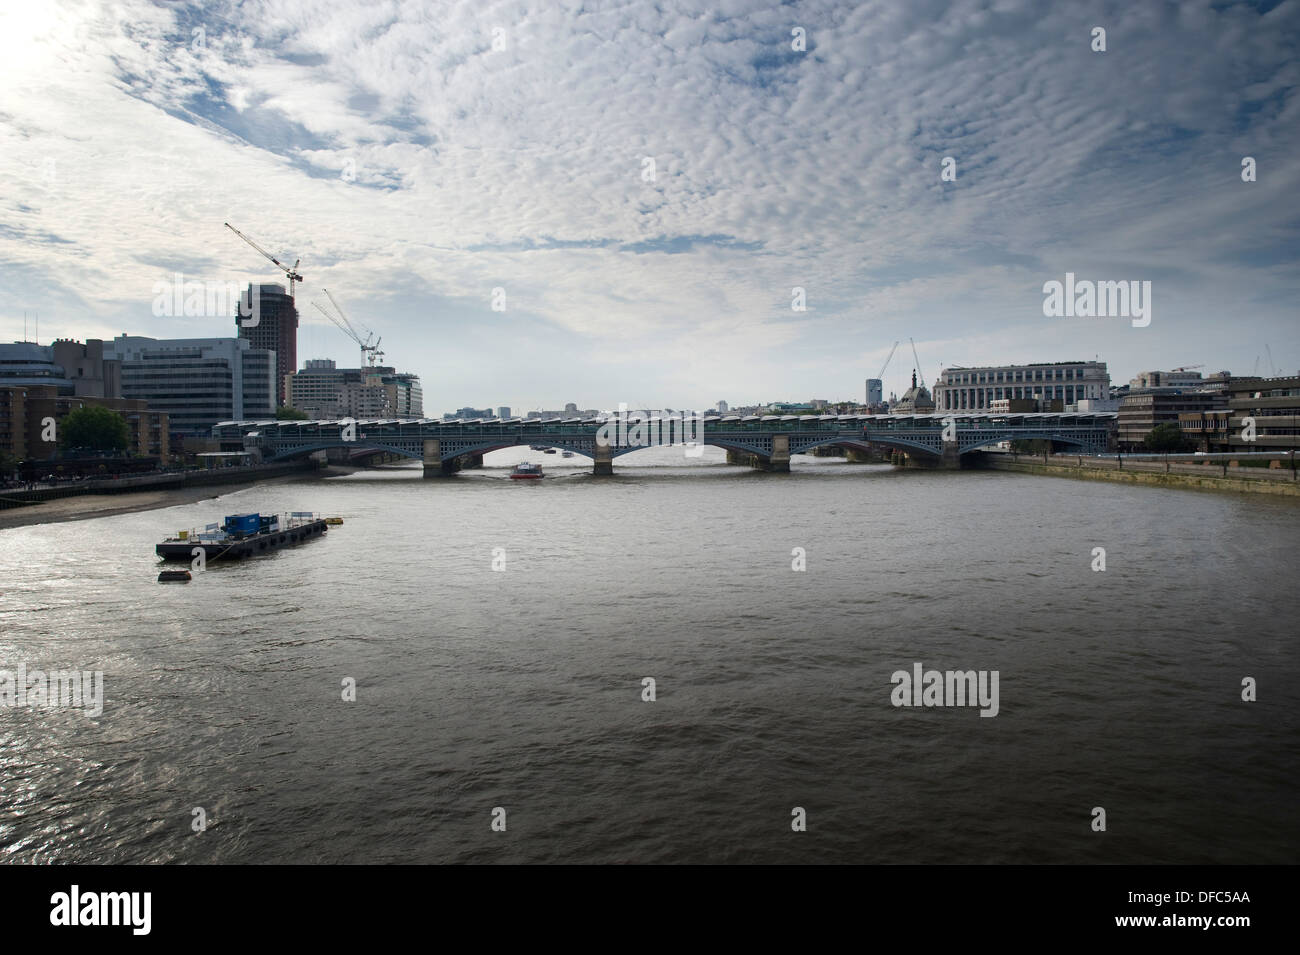 La nuova copertura per le piattaforme a Blackfriars Bridge stazione ferroviaria, la città di Londra, Regno Unito Foto Stock